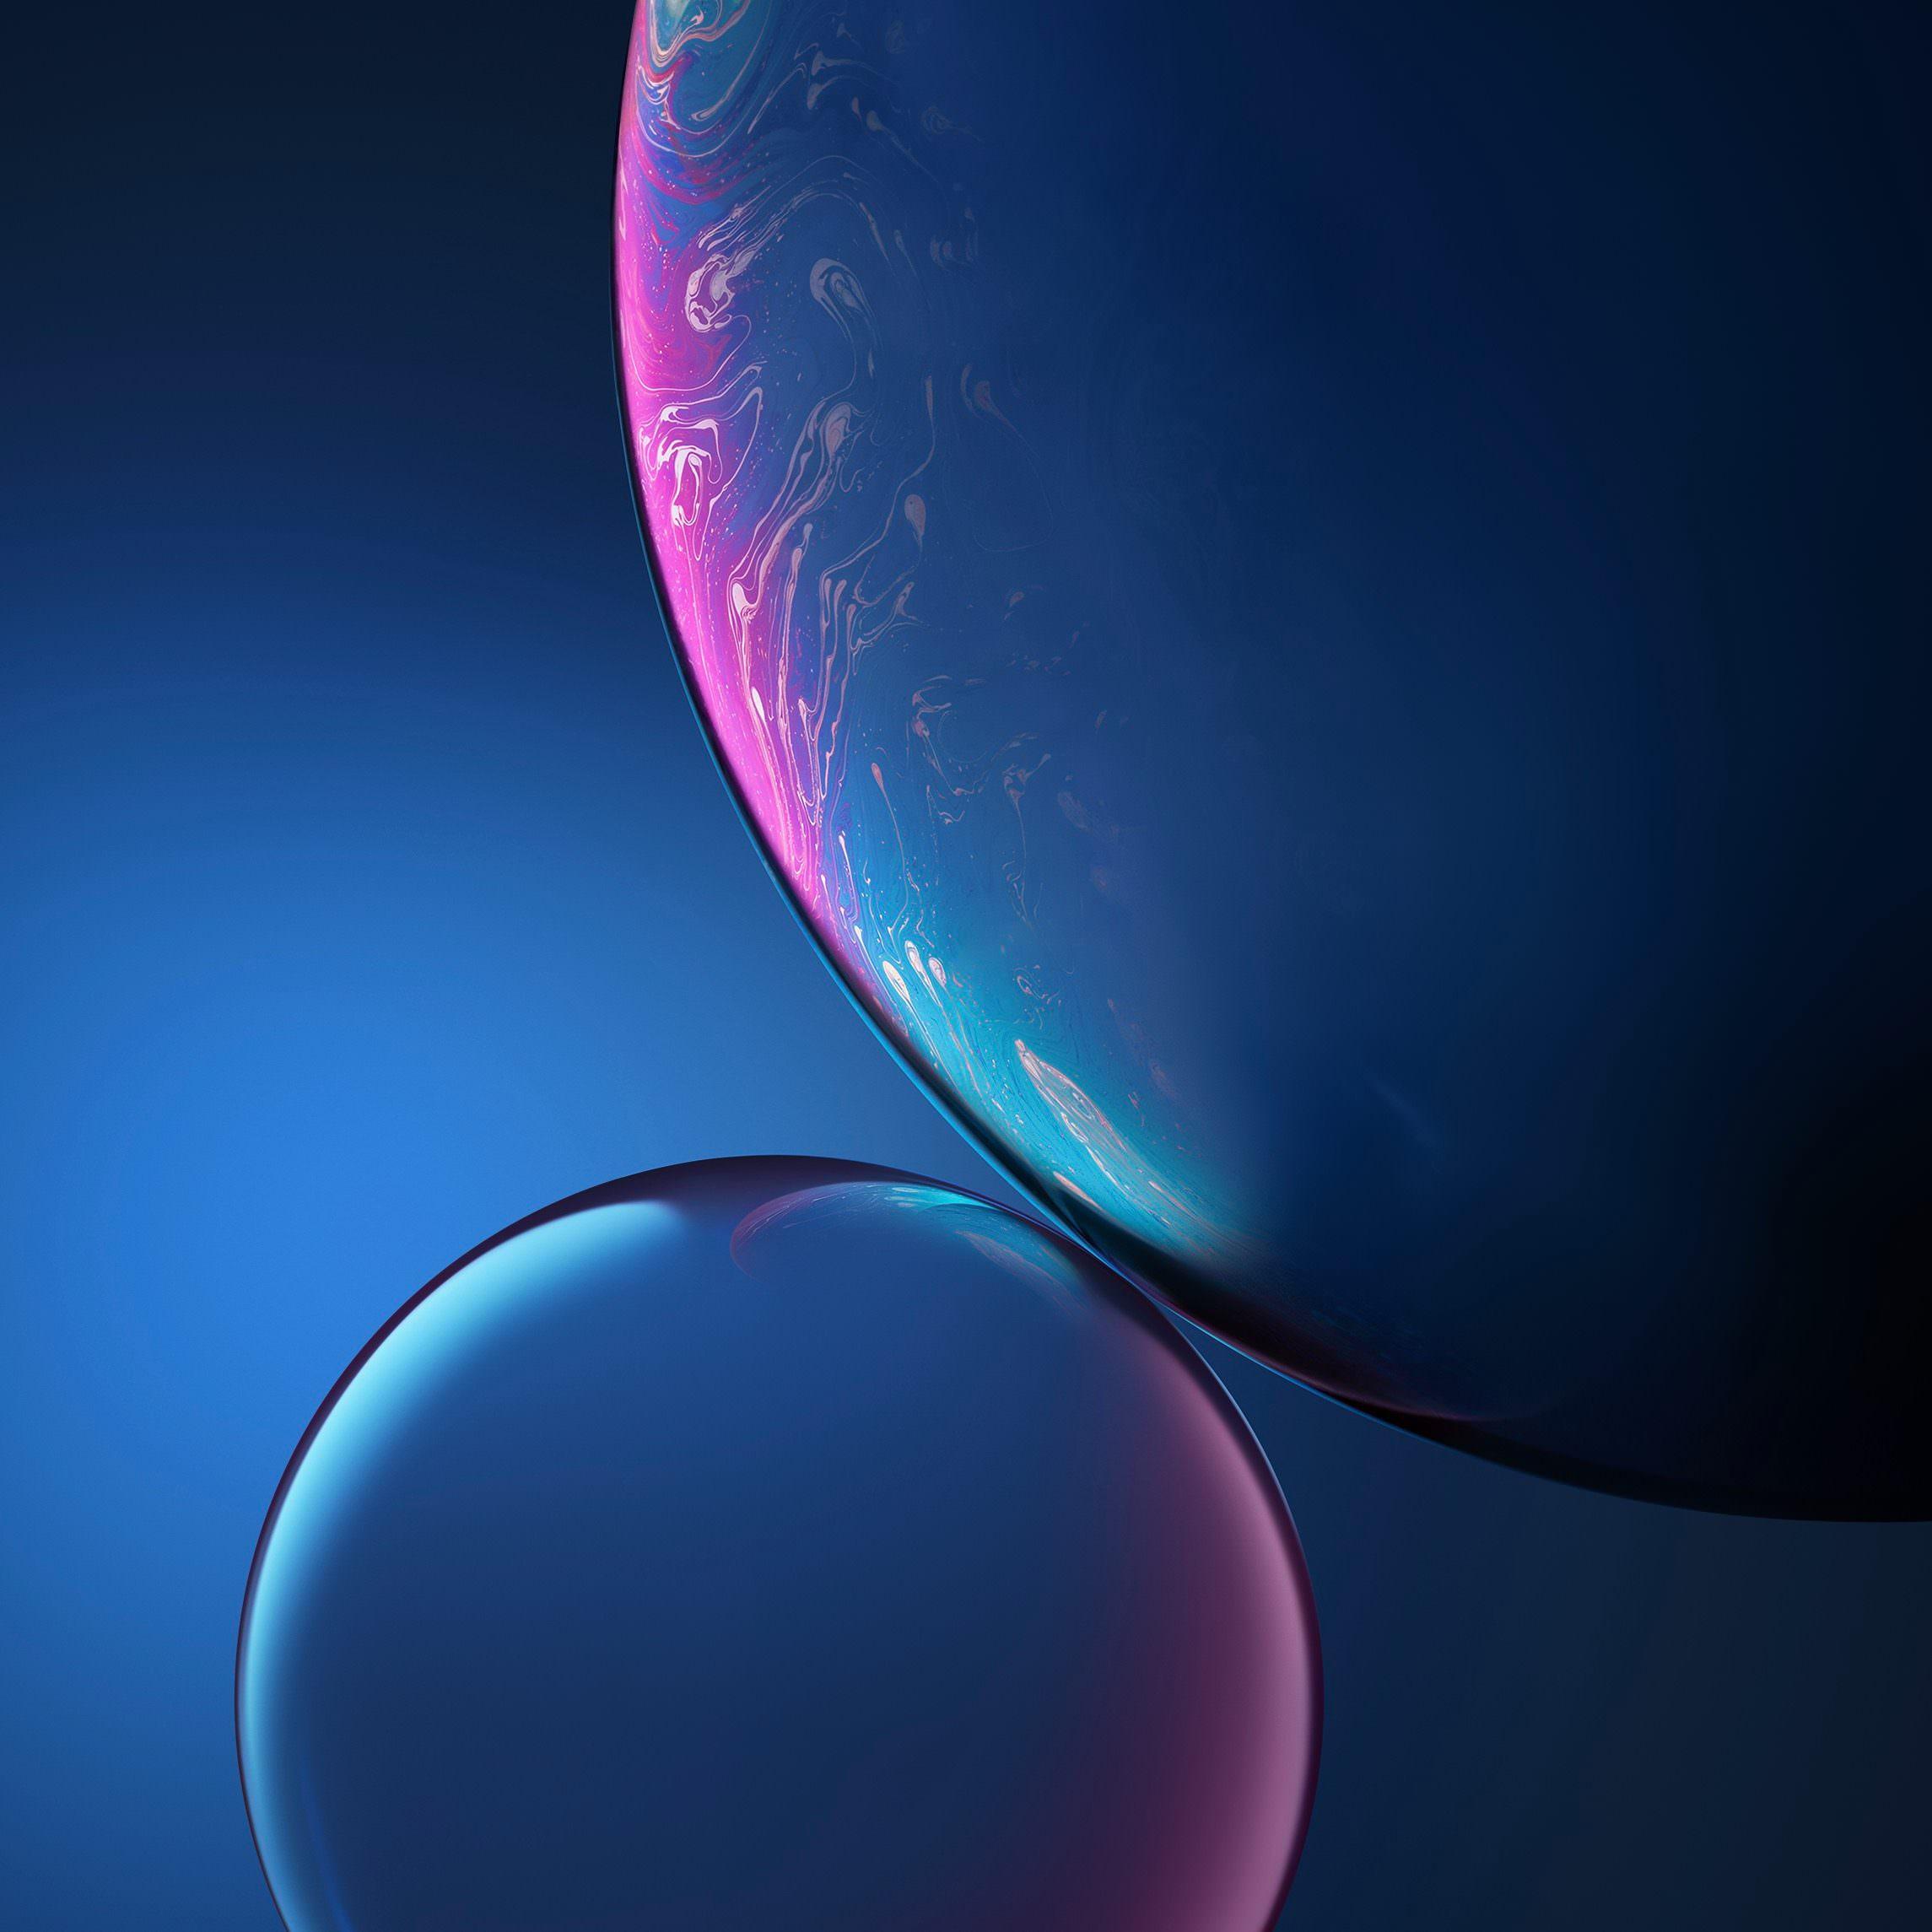 iPhone XR Bubbles Wallpaper